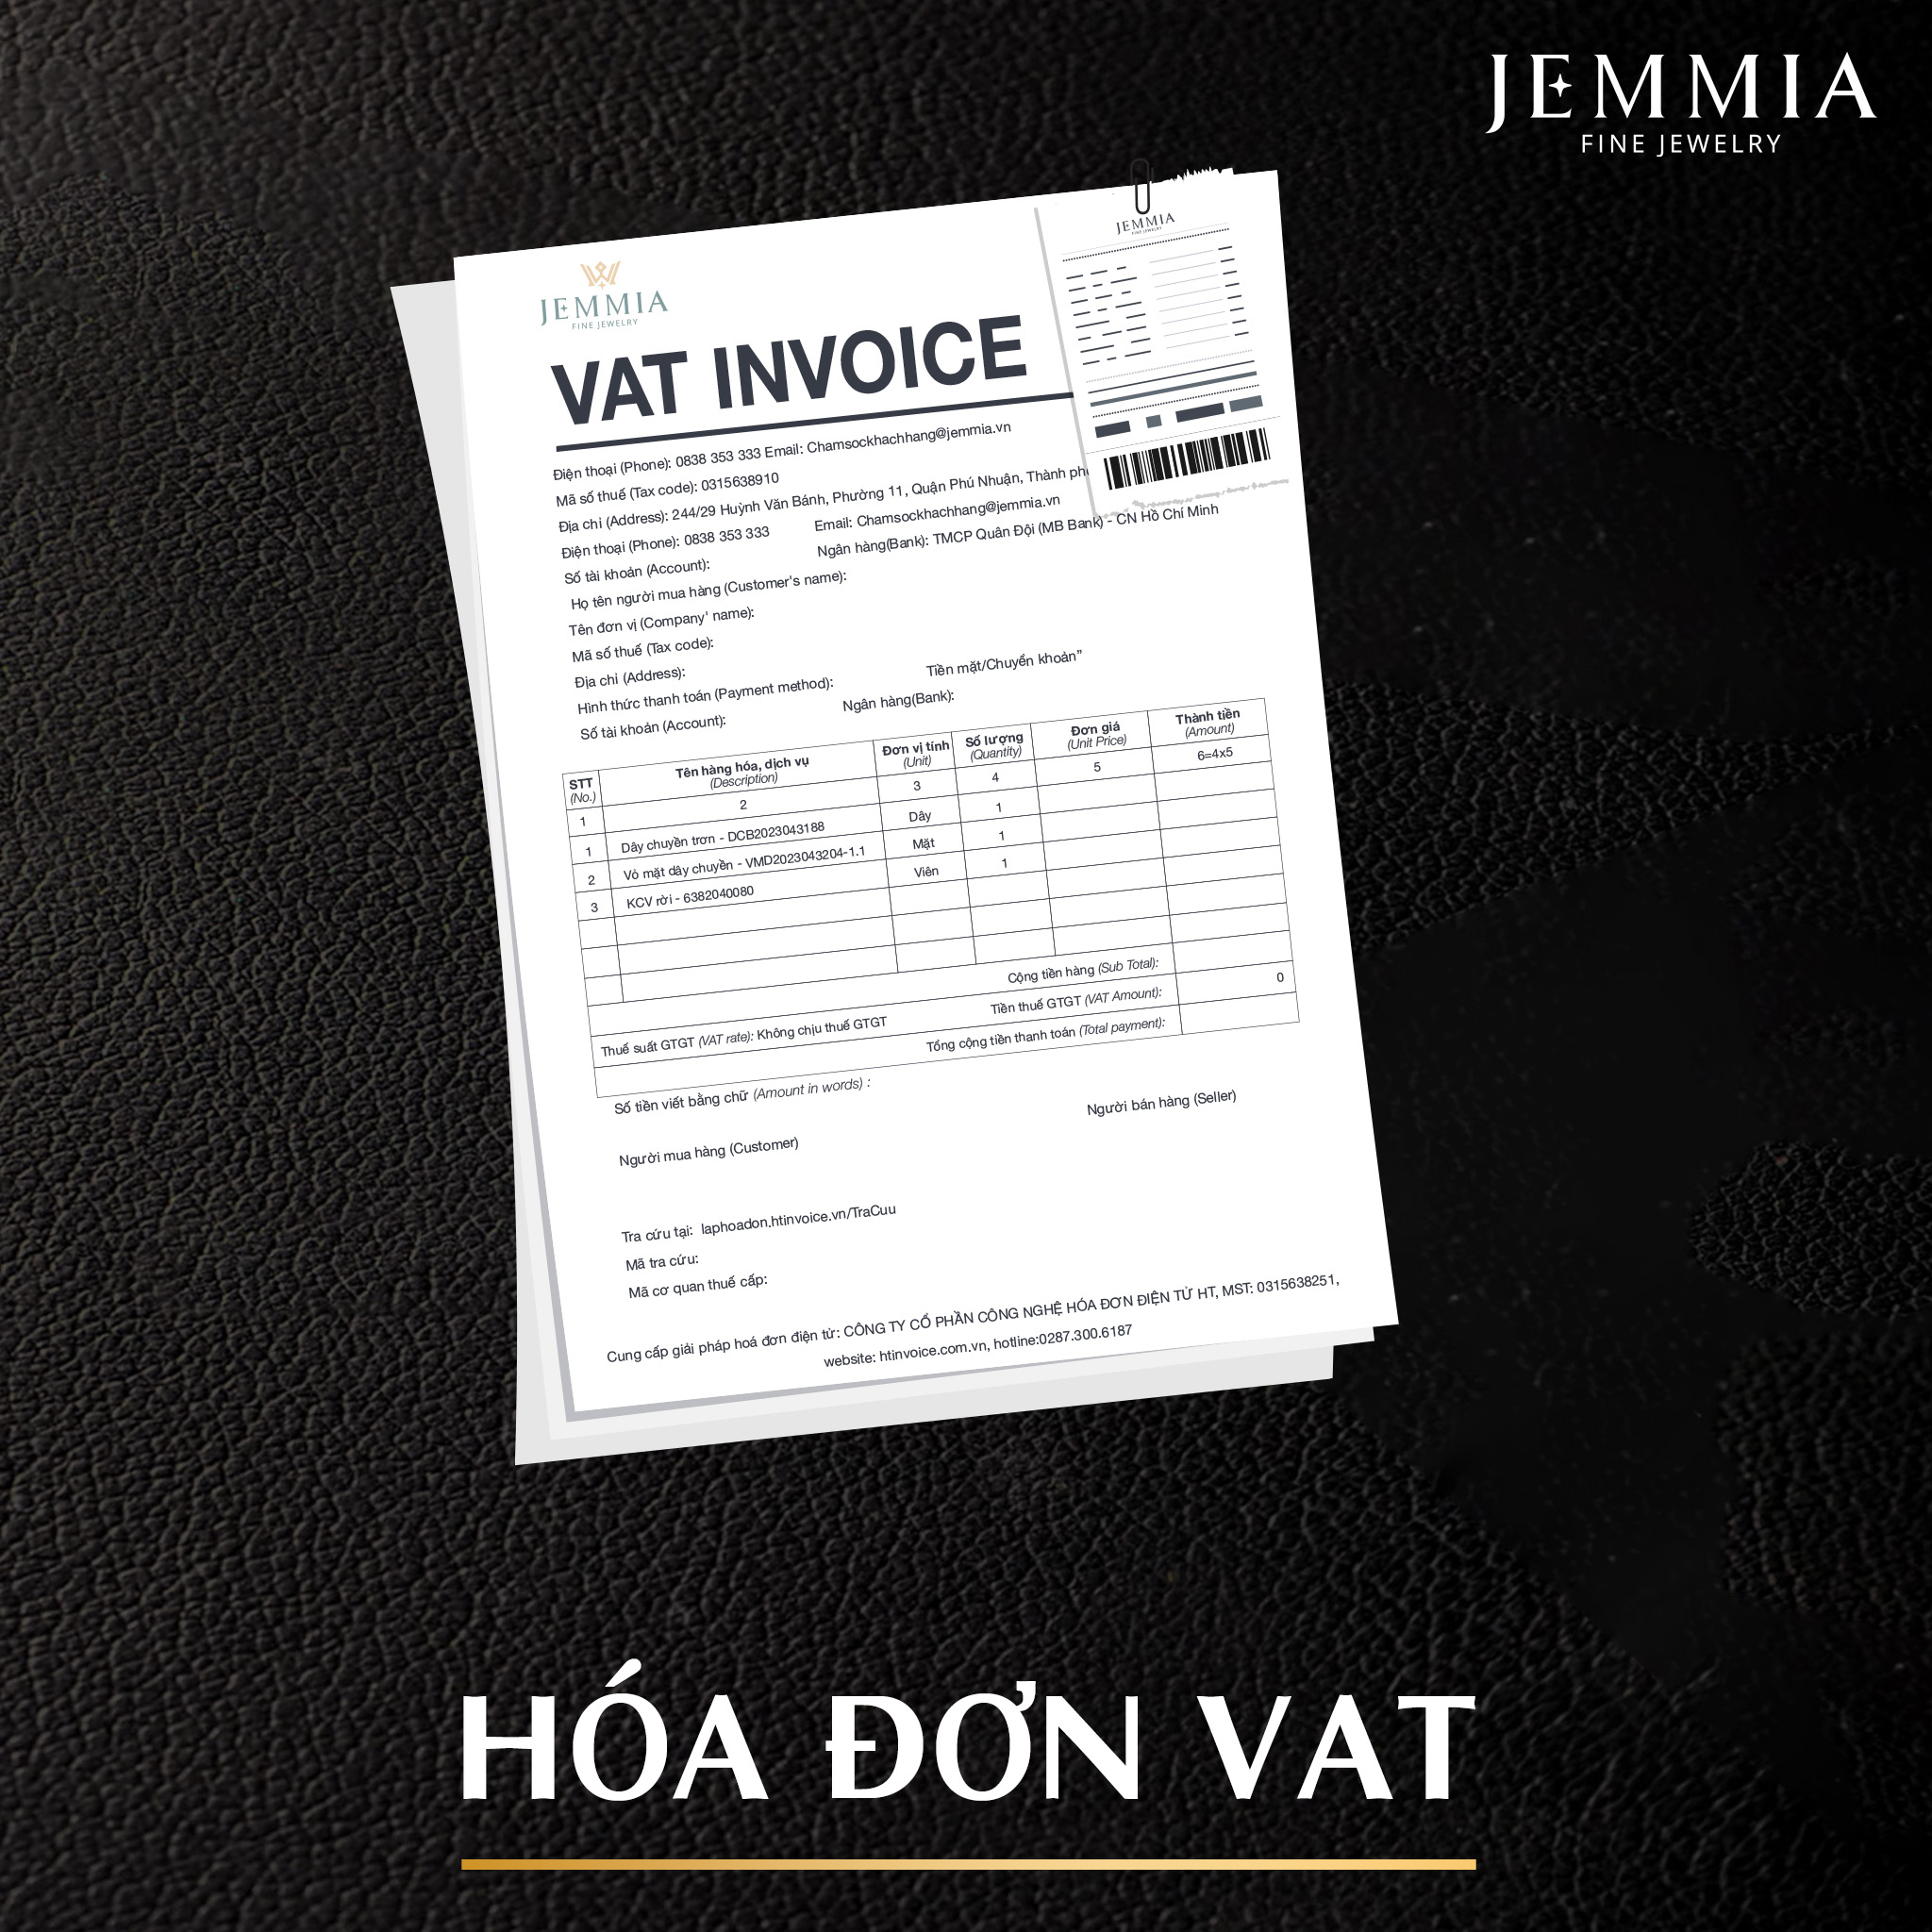 Kim cương khi mua tại Jemmia có xuất hóa đơn VAT